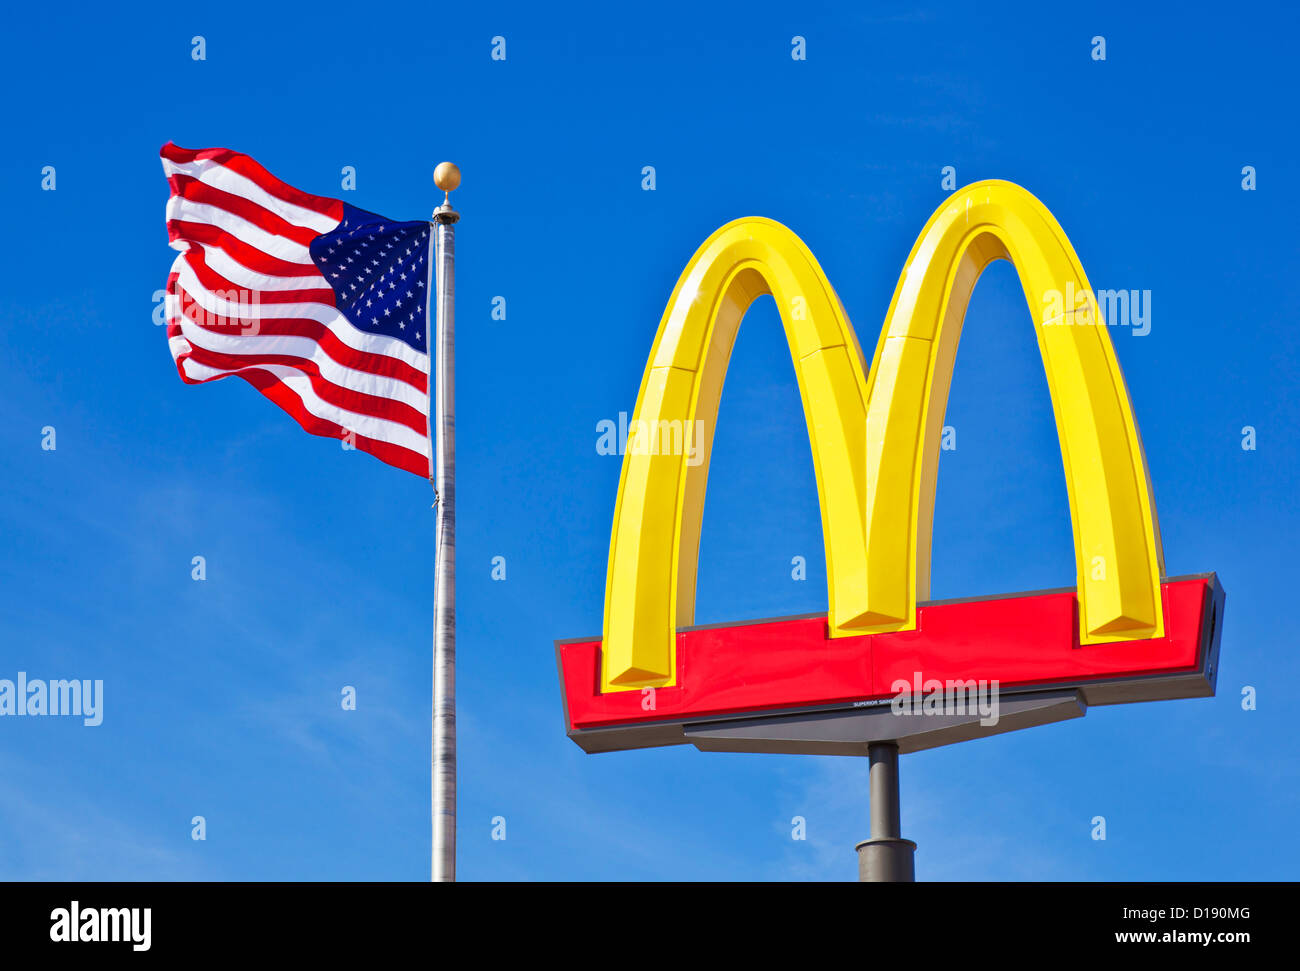 Mcdonald's archi Logo segno contro un cielo blu chiaro con una bandiera americana a stelle e strisce USA Stati Uniti d'America Foto Stock